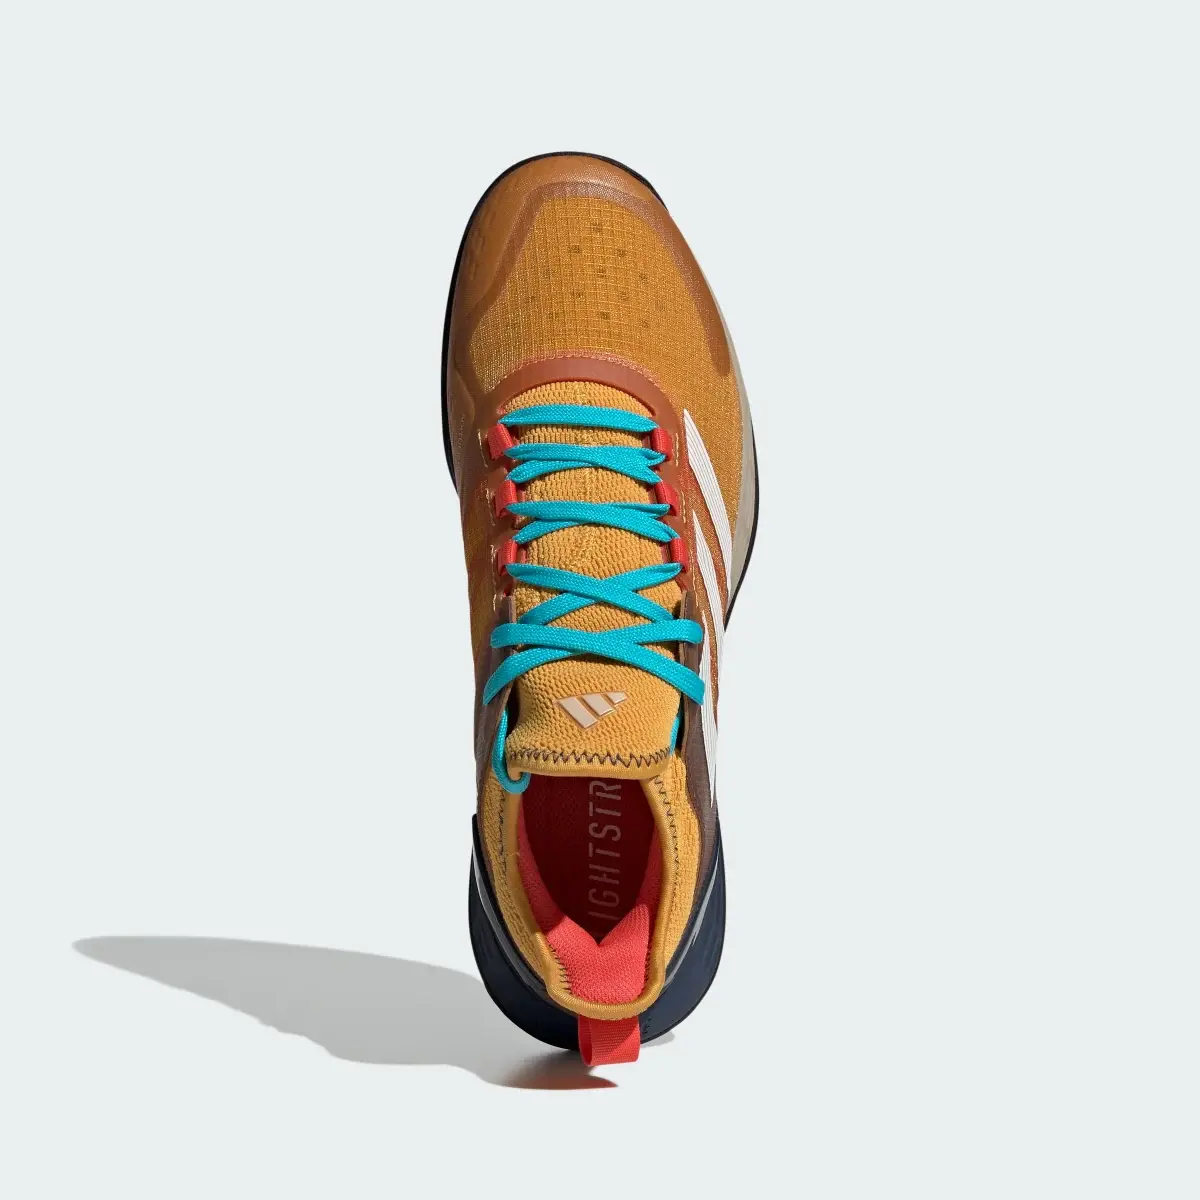 Adidas Adizero Ubersonic 4.1 Tennis Shoes. 3